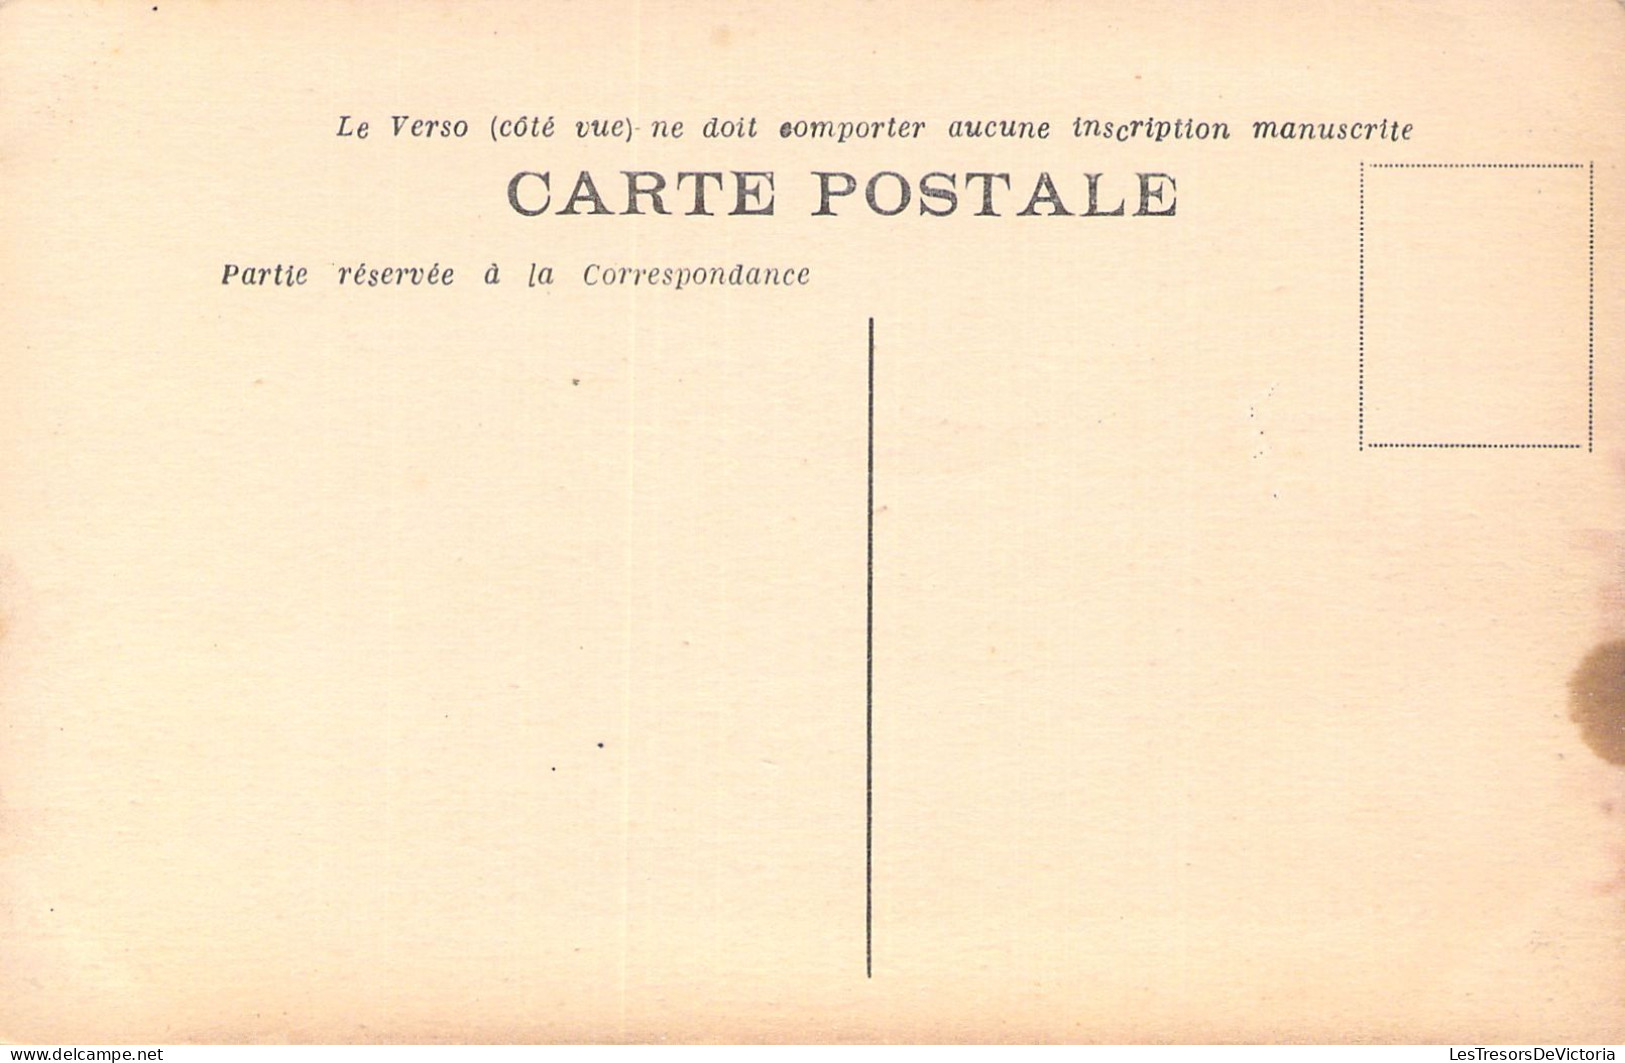 FRANCE - 24 - PERIGUEUX - La Basilique Saint Front - Carte Postale Ancienne - Périgueux